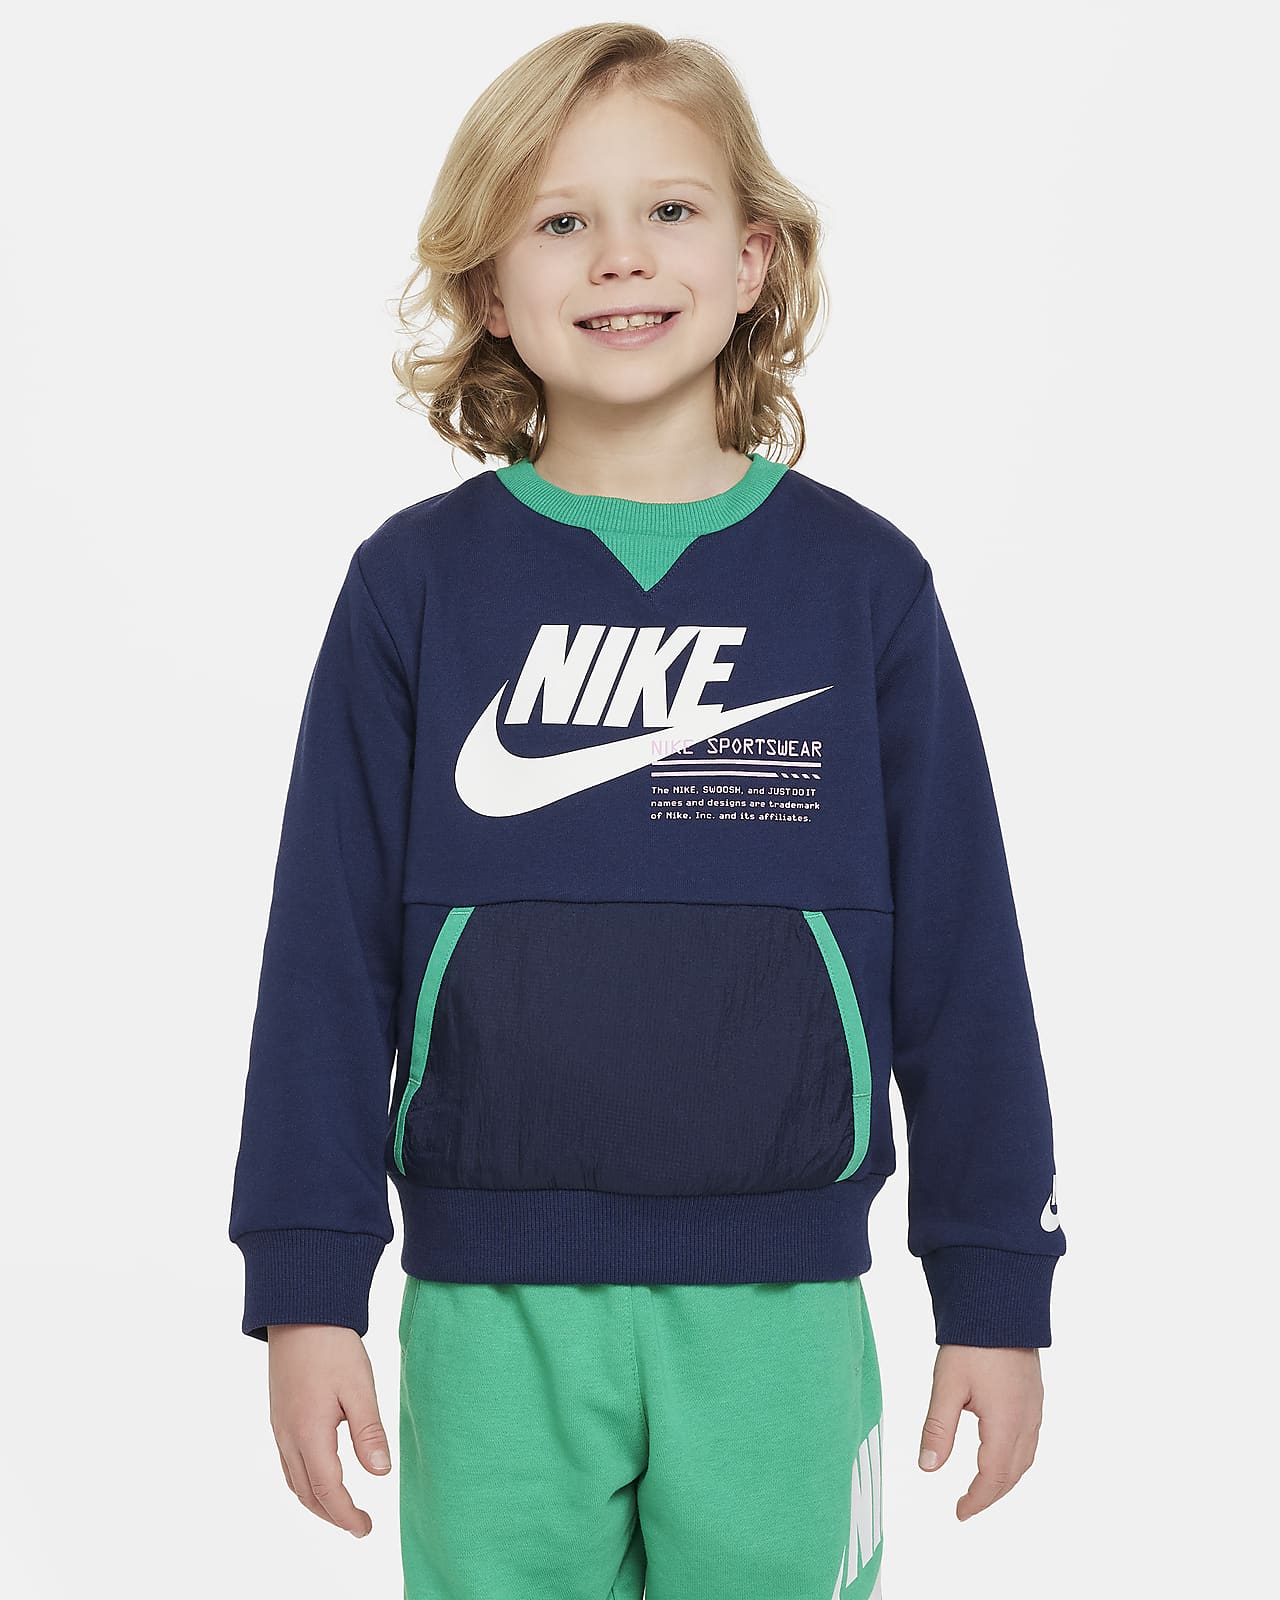 Nike Sportswear Paint Your Future 幼童法式毛圈圆领上衣